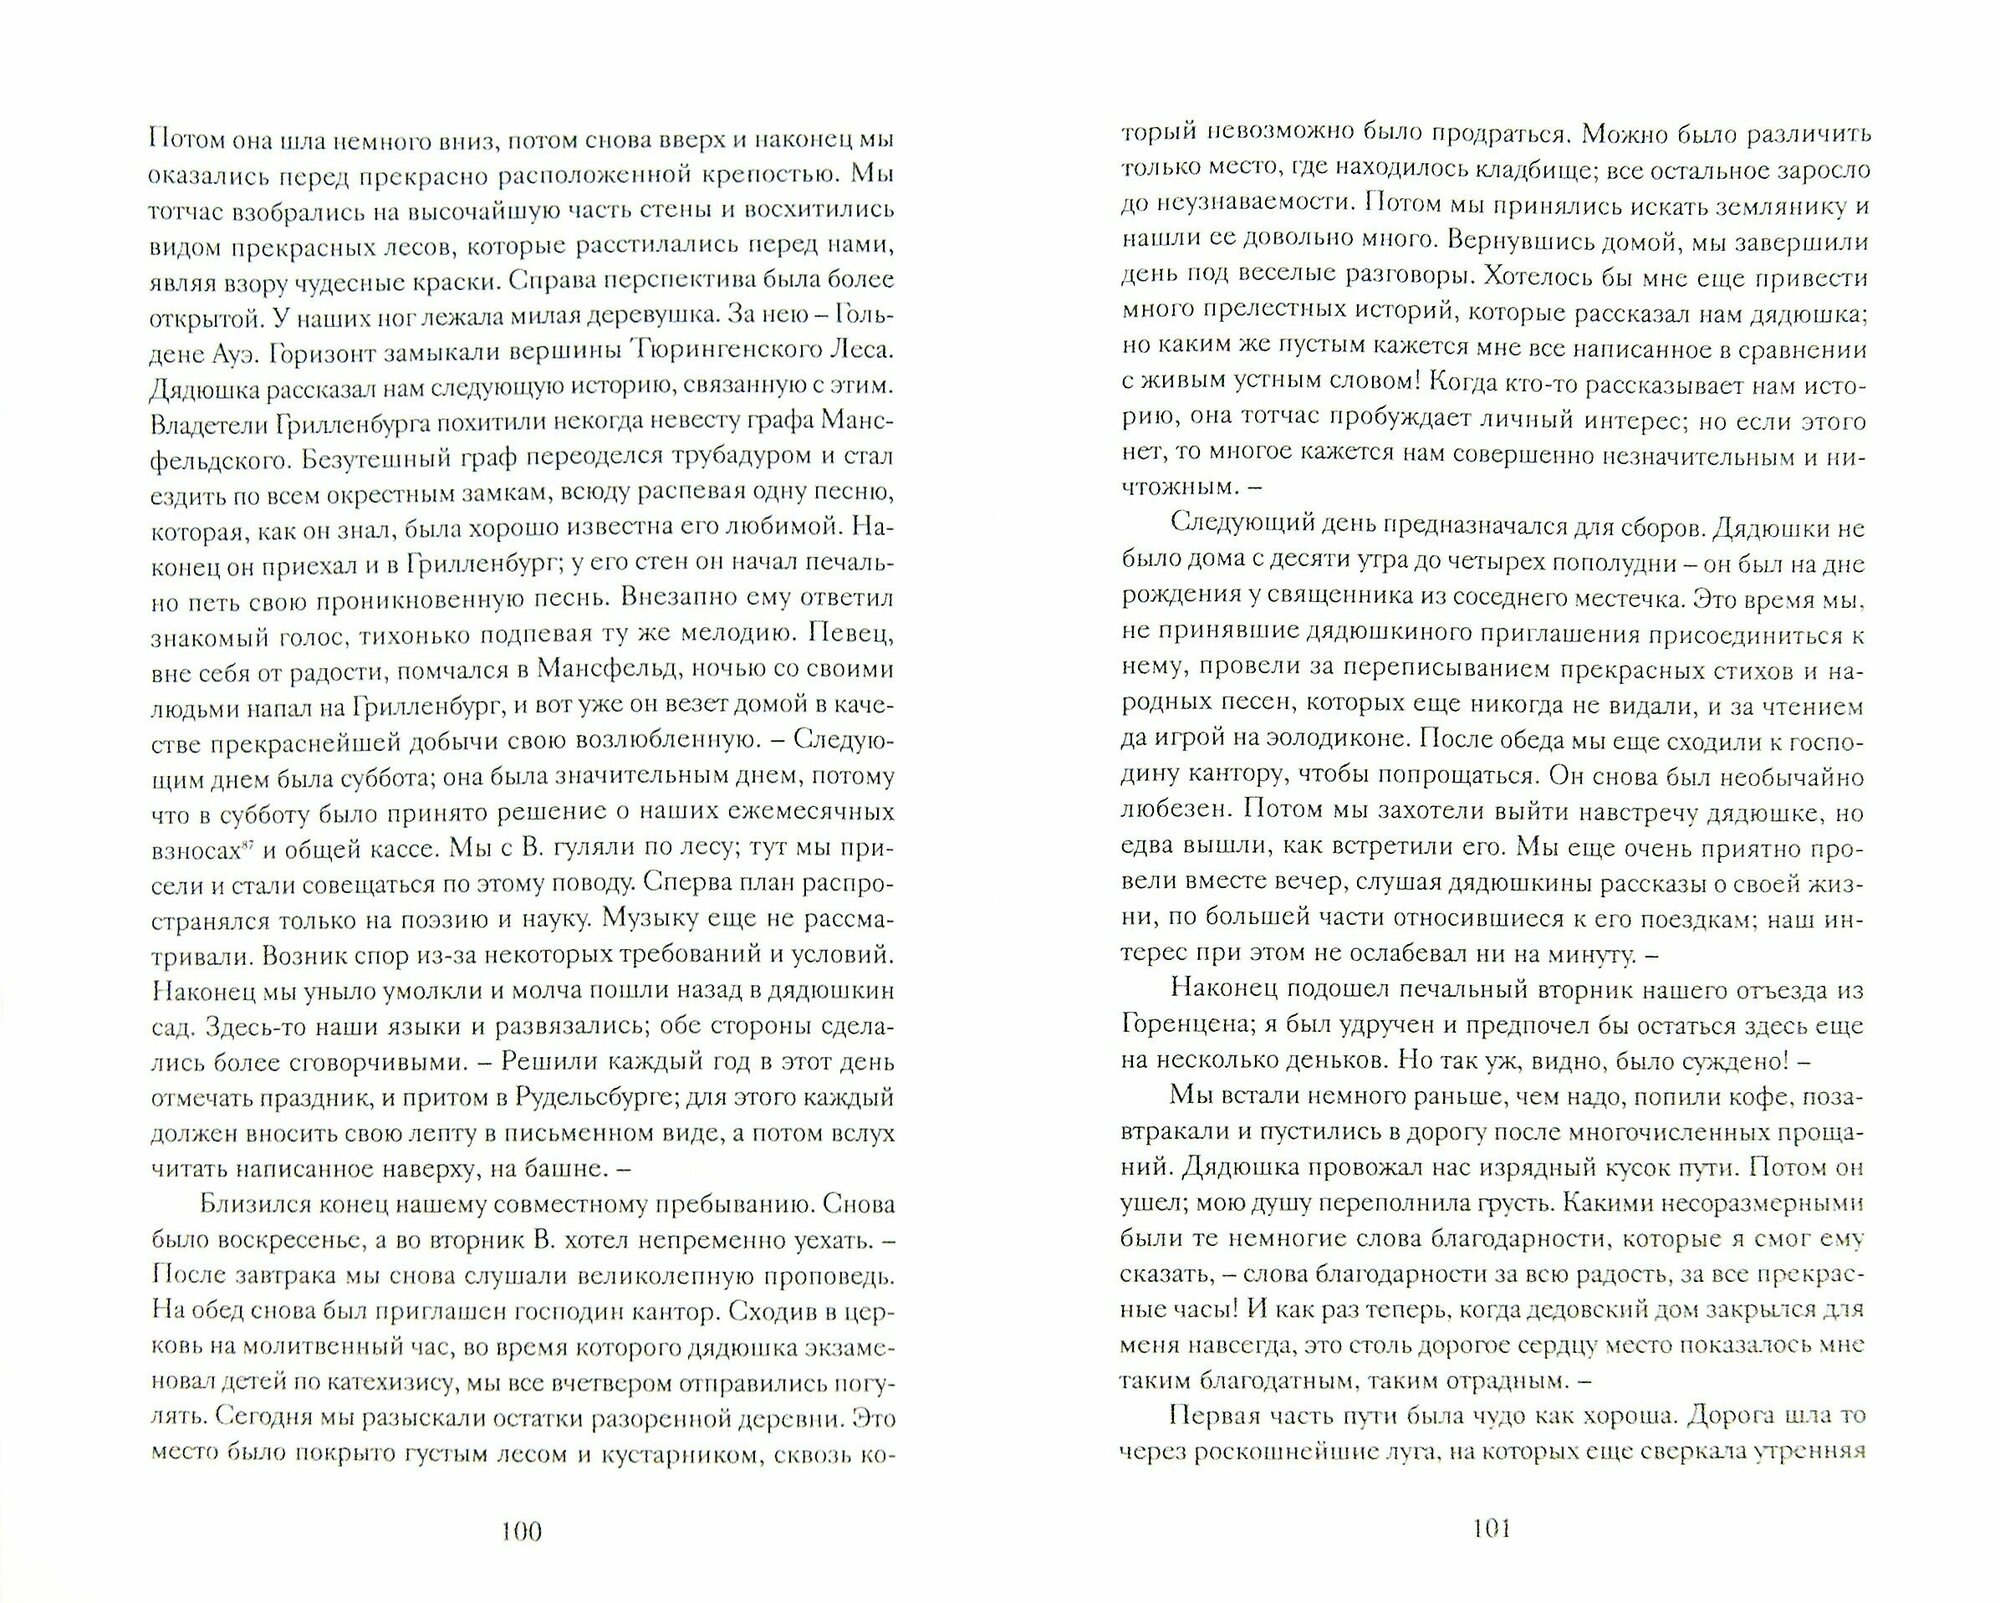 Юный Ницше. Автобиографические материалы, избранные письма и ранние работы периода 1856-1868 гг. - фото №2